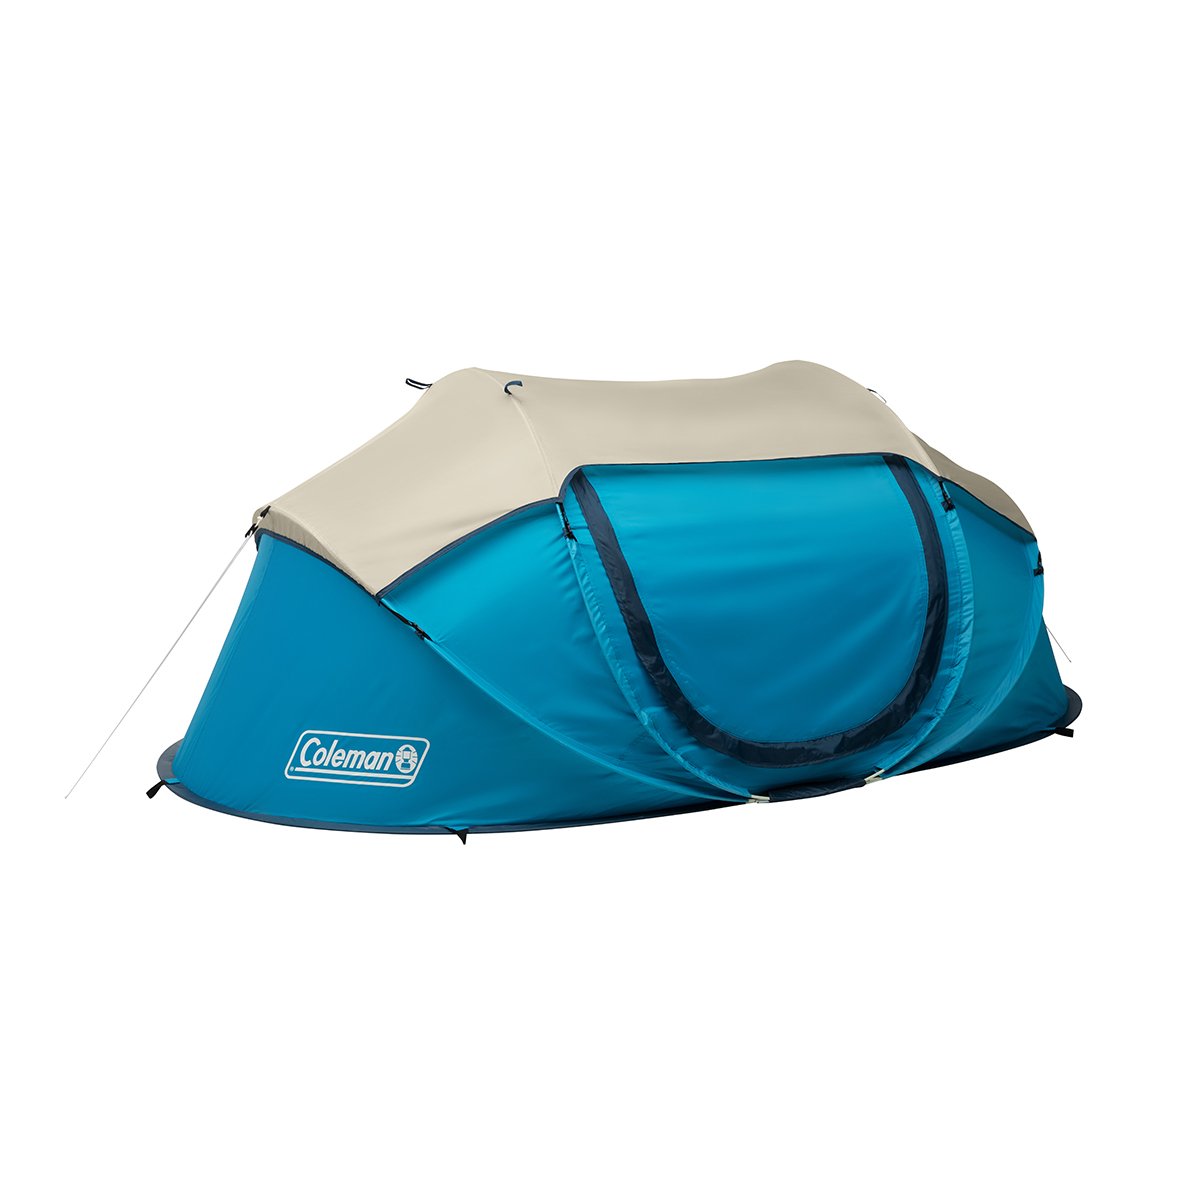 emulsie bijkeuken Michelangelo 2-Person Camp Burst™ Pop-Up Tent | Coleman